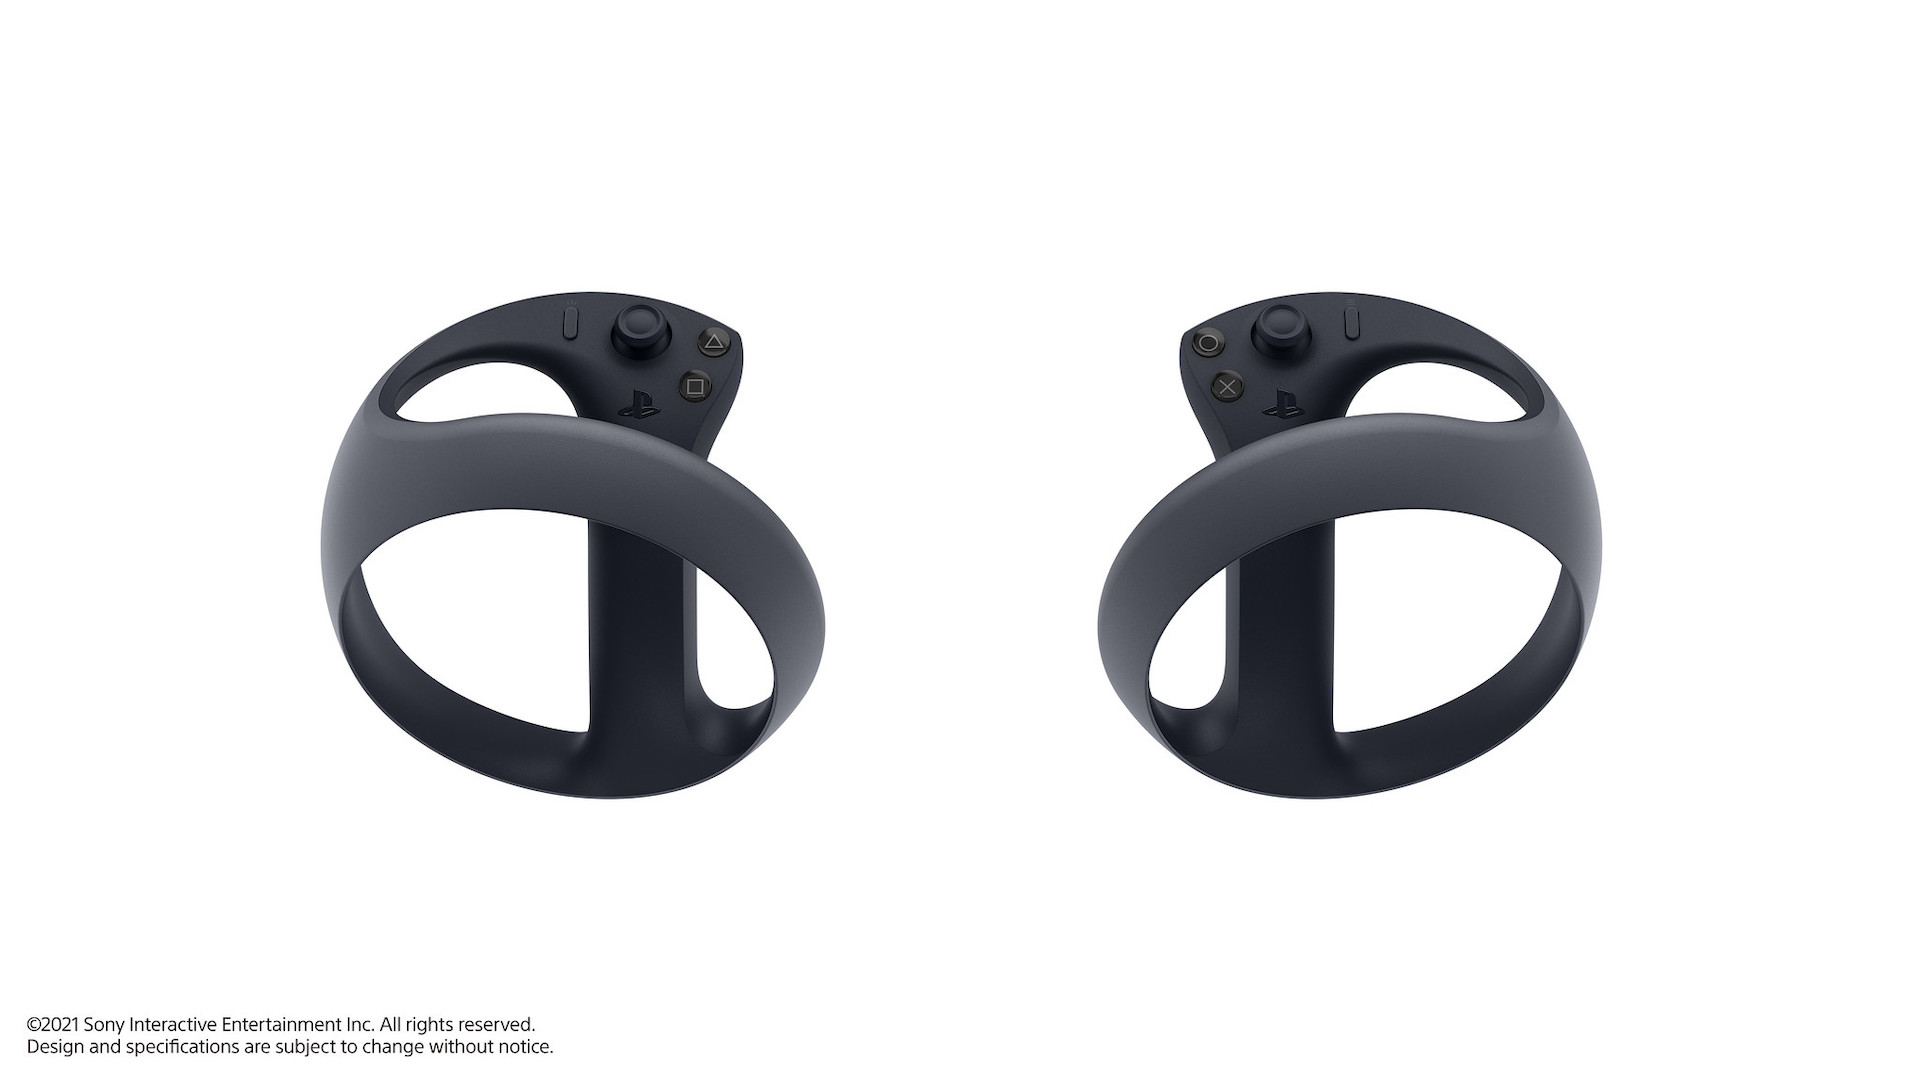 PS VR2, manette Sense : date de sortie, prix, caractéristiques